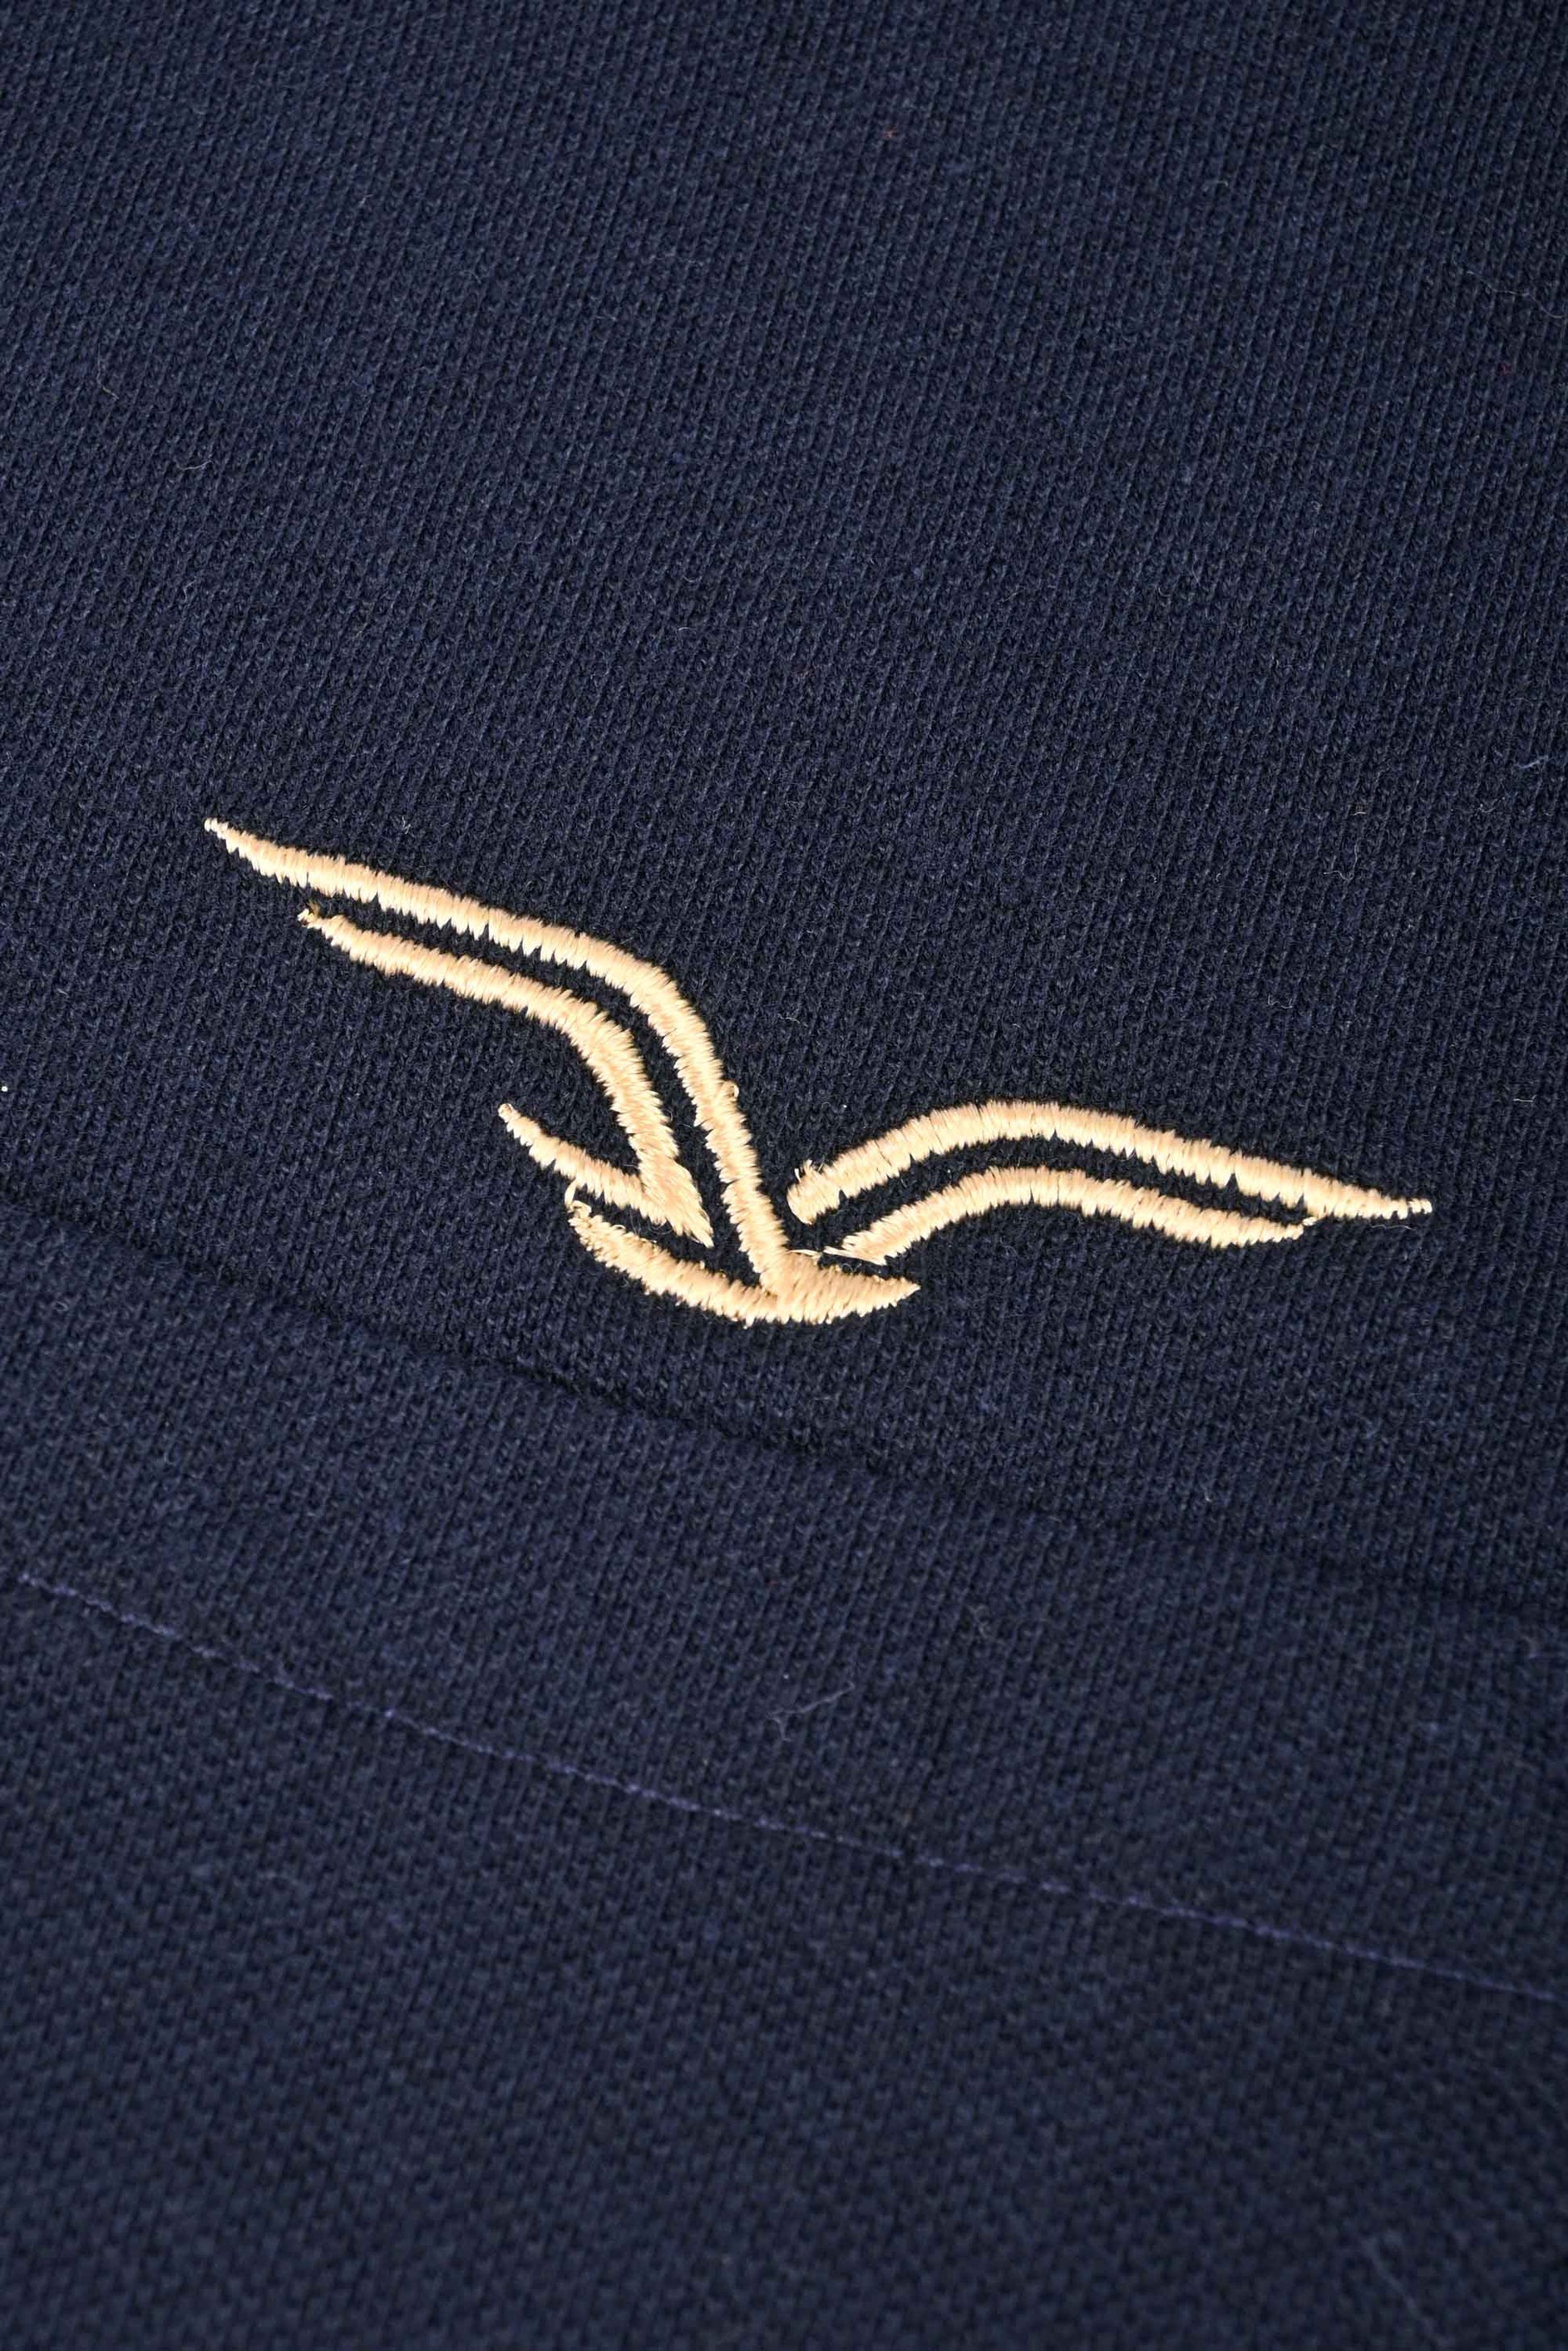 Polo Republica Men's Eagle Crest & Polo 3 Embroidered Pocket Polo Shirtb